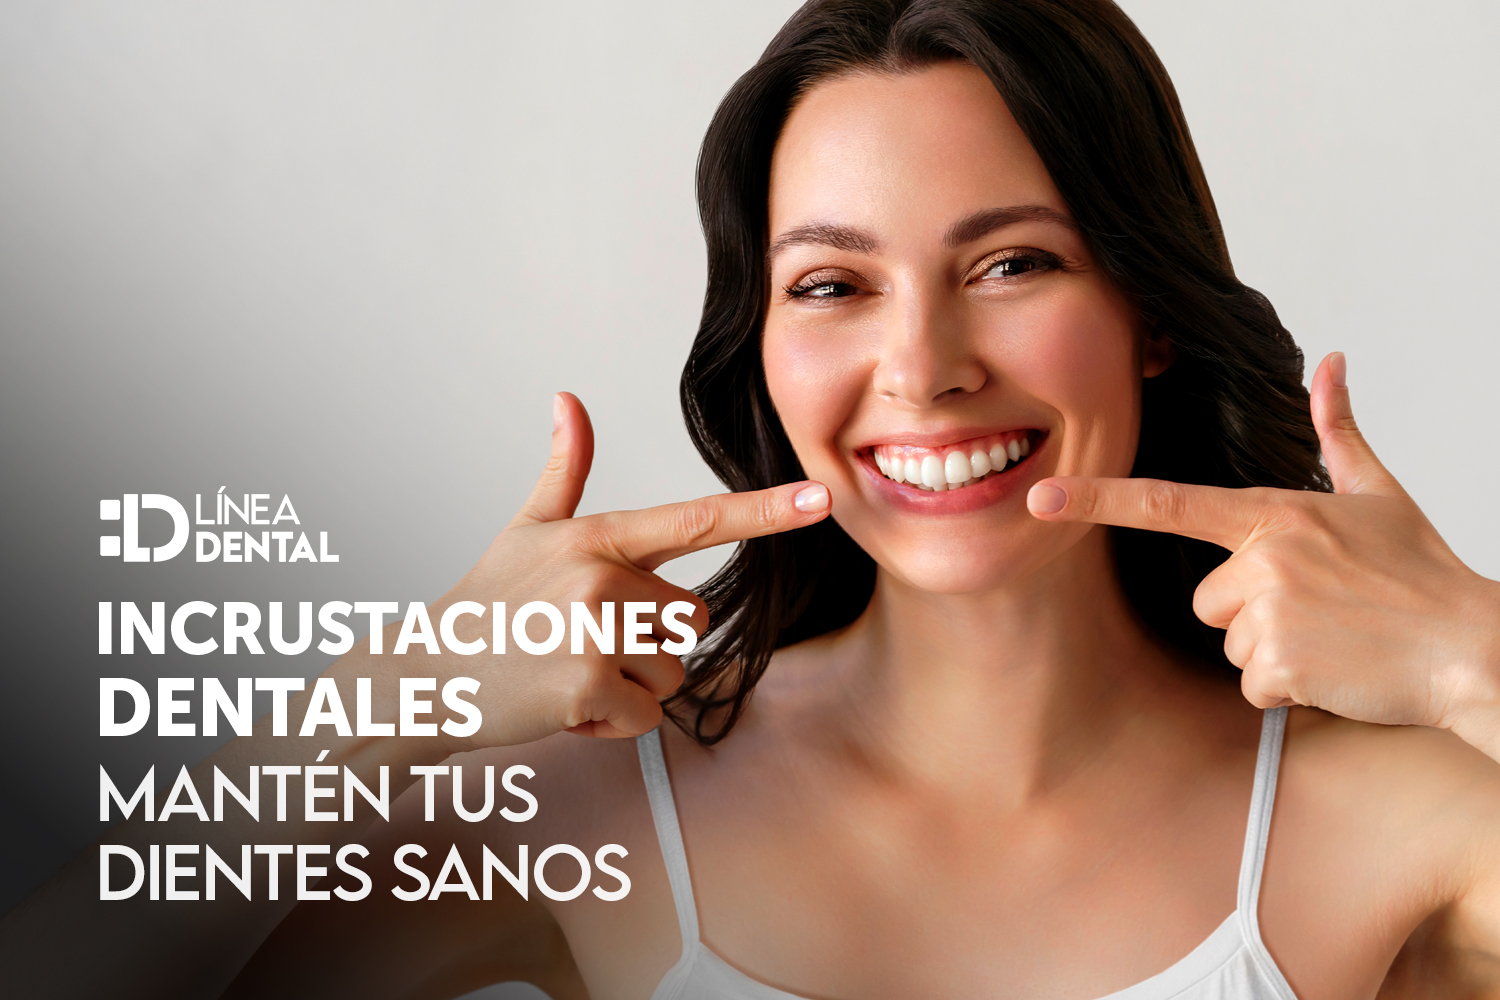 incrustaciones-dentales-empaste-dental-dentista-odontologo-linea-dental-ciudad-real-miguelturra